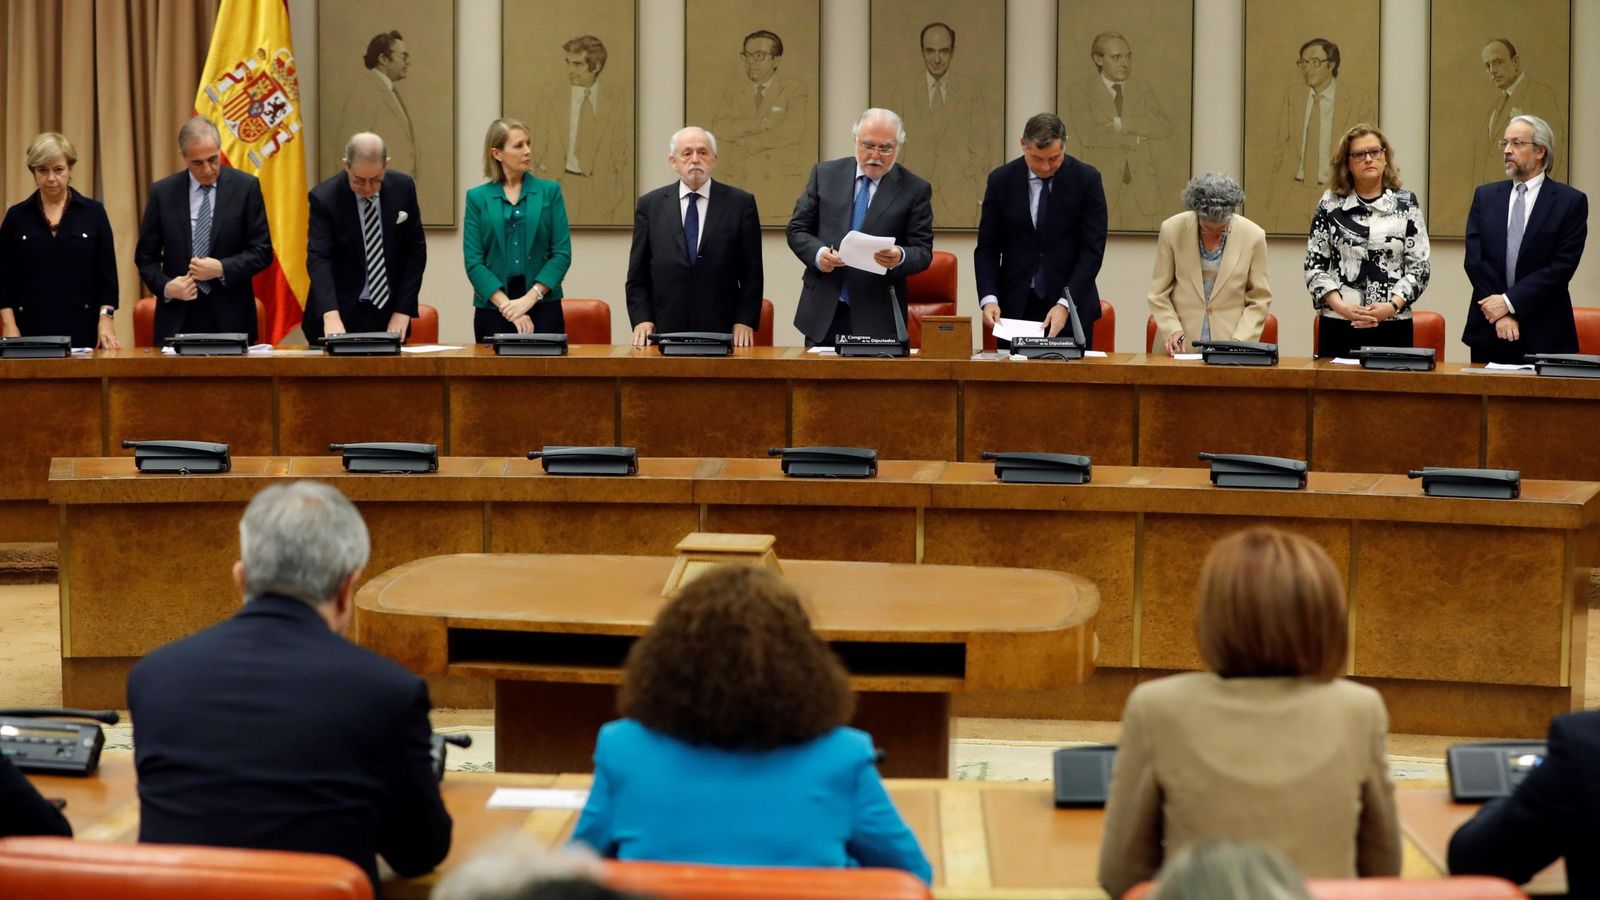 Foto: La Junta Electoral Central vigila el acatamiento de la Constitución de los eurodiputados. (EFE)